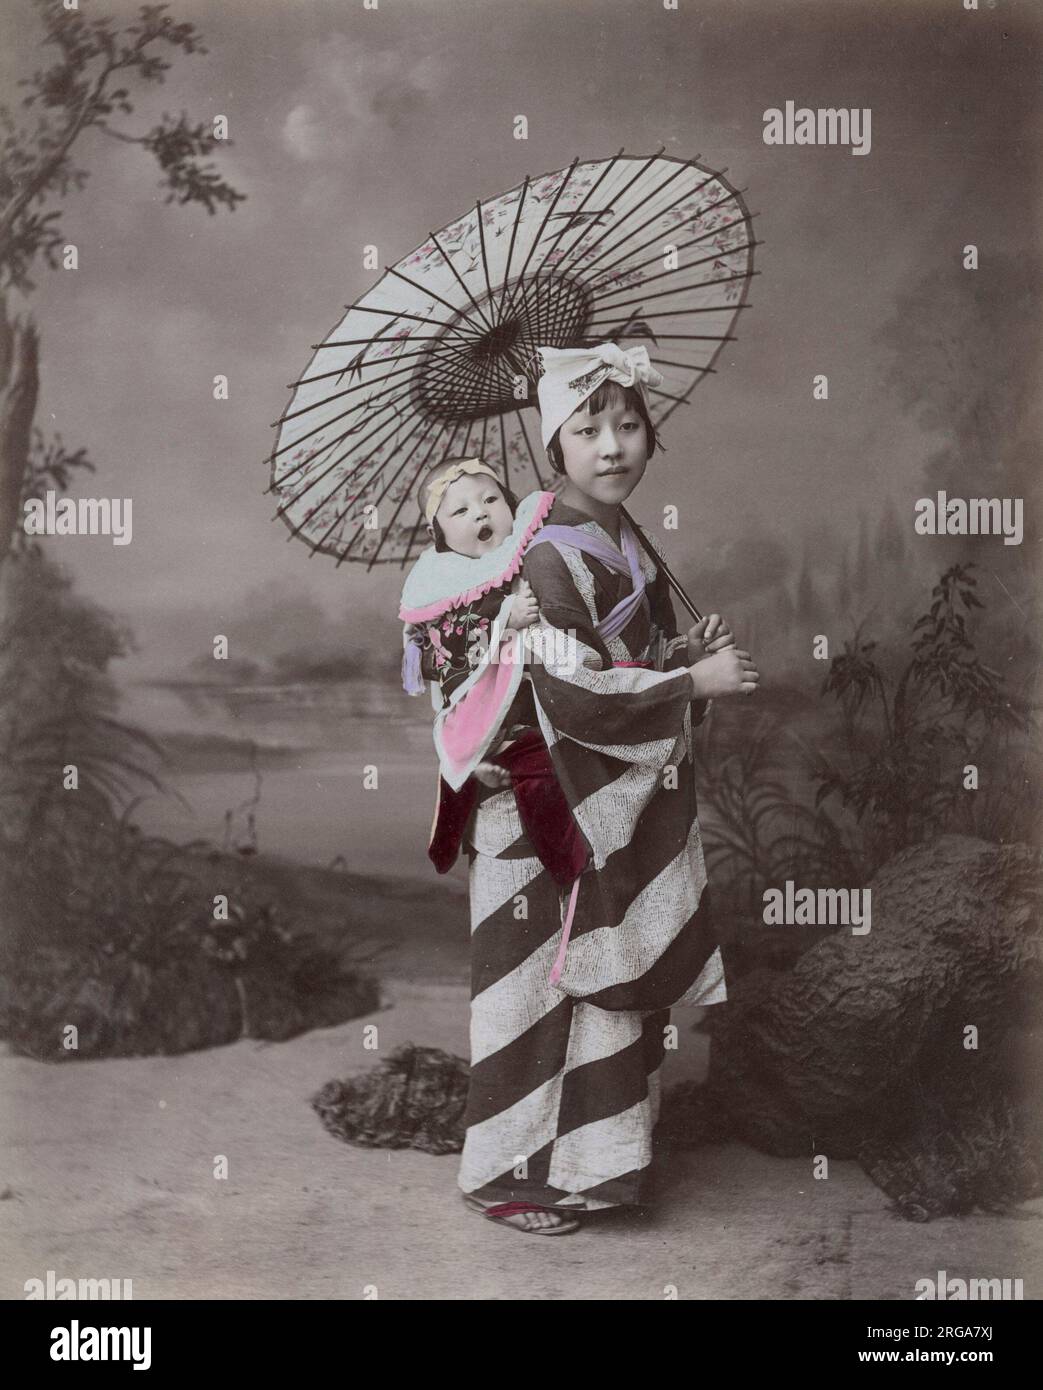 Junge Frau oder Krankenschwester / Kindermädchen, die ein Baby trägt, Japan. Vintage 19. Jahrhundert Foto. Stockfoto